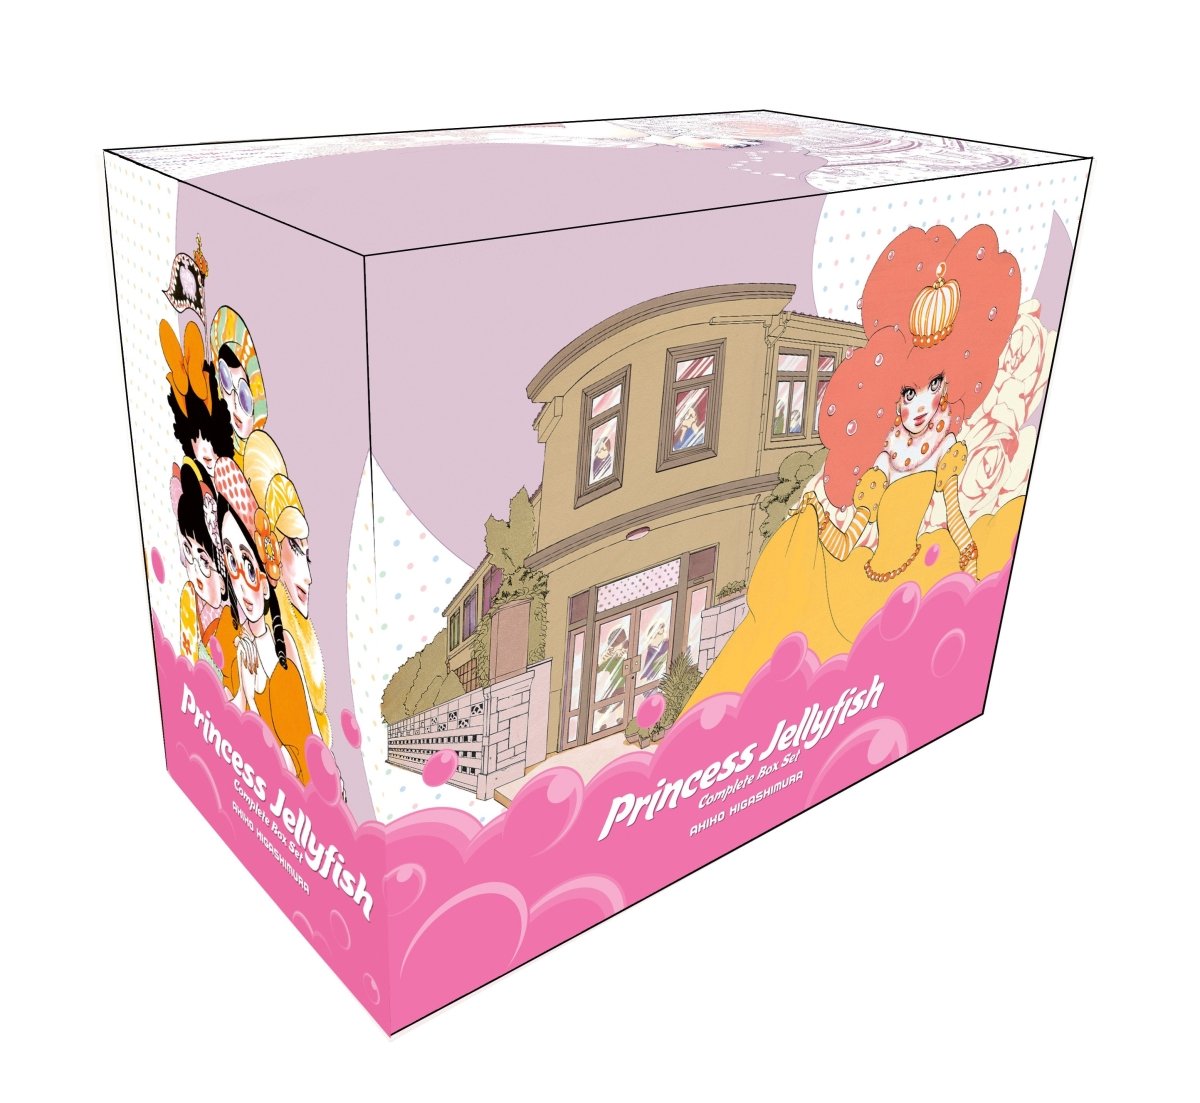 Manga Box Sets - Walt's Comic Shop